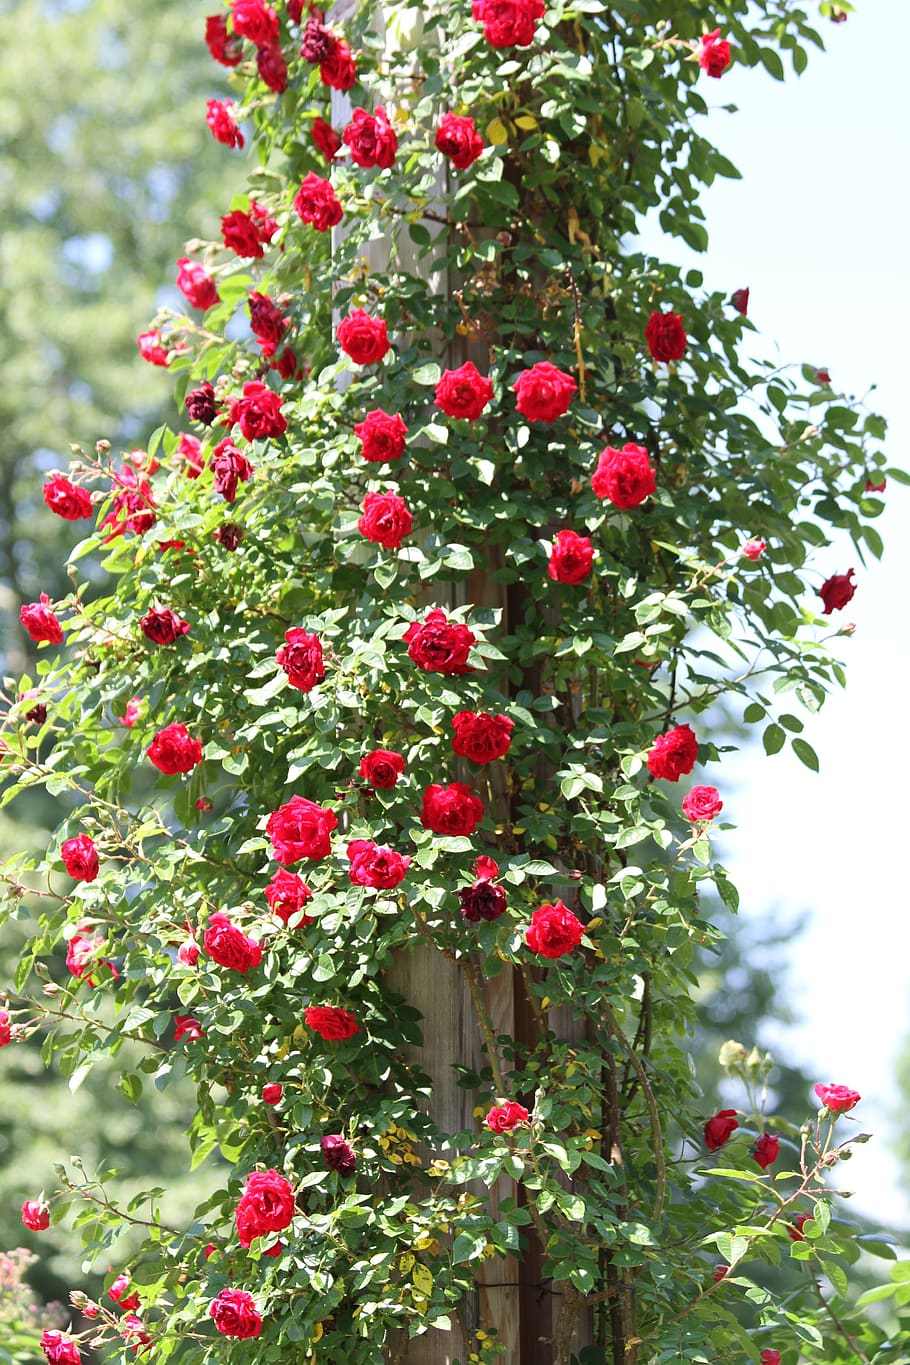 rosebush, red, roses, climbing roses, garden, park, nature, summer, bush, leaves